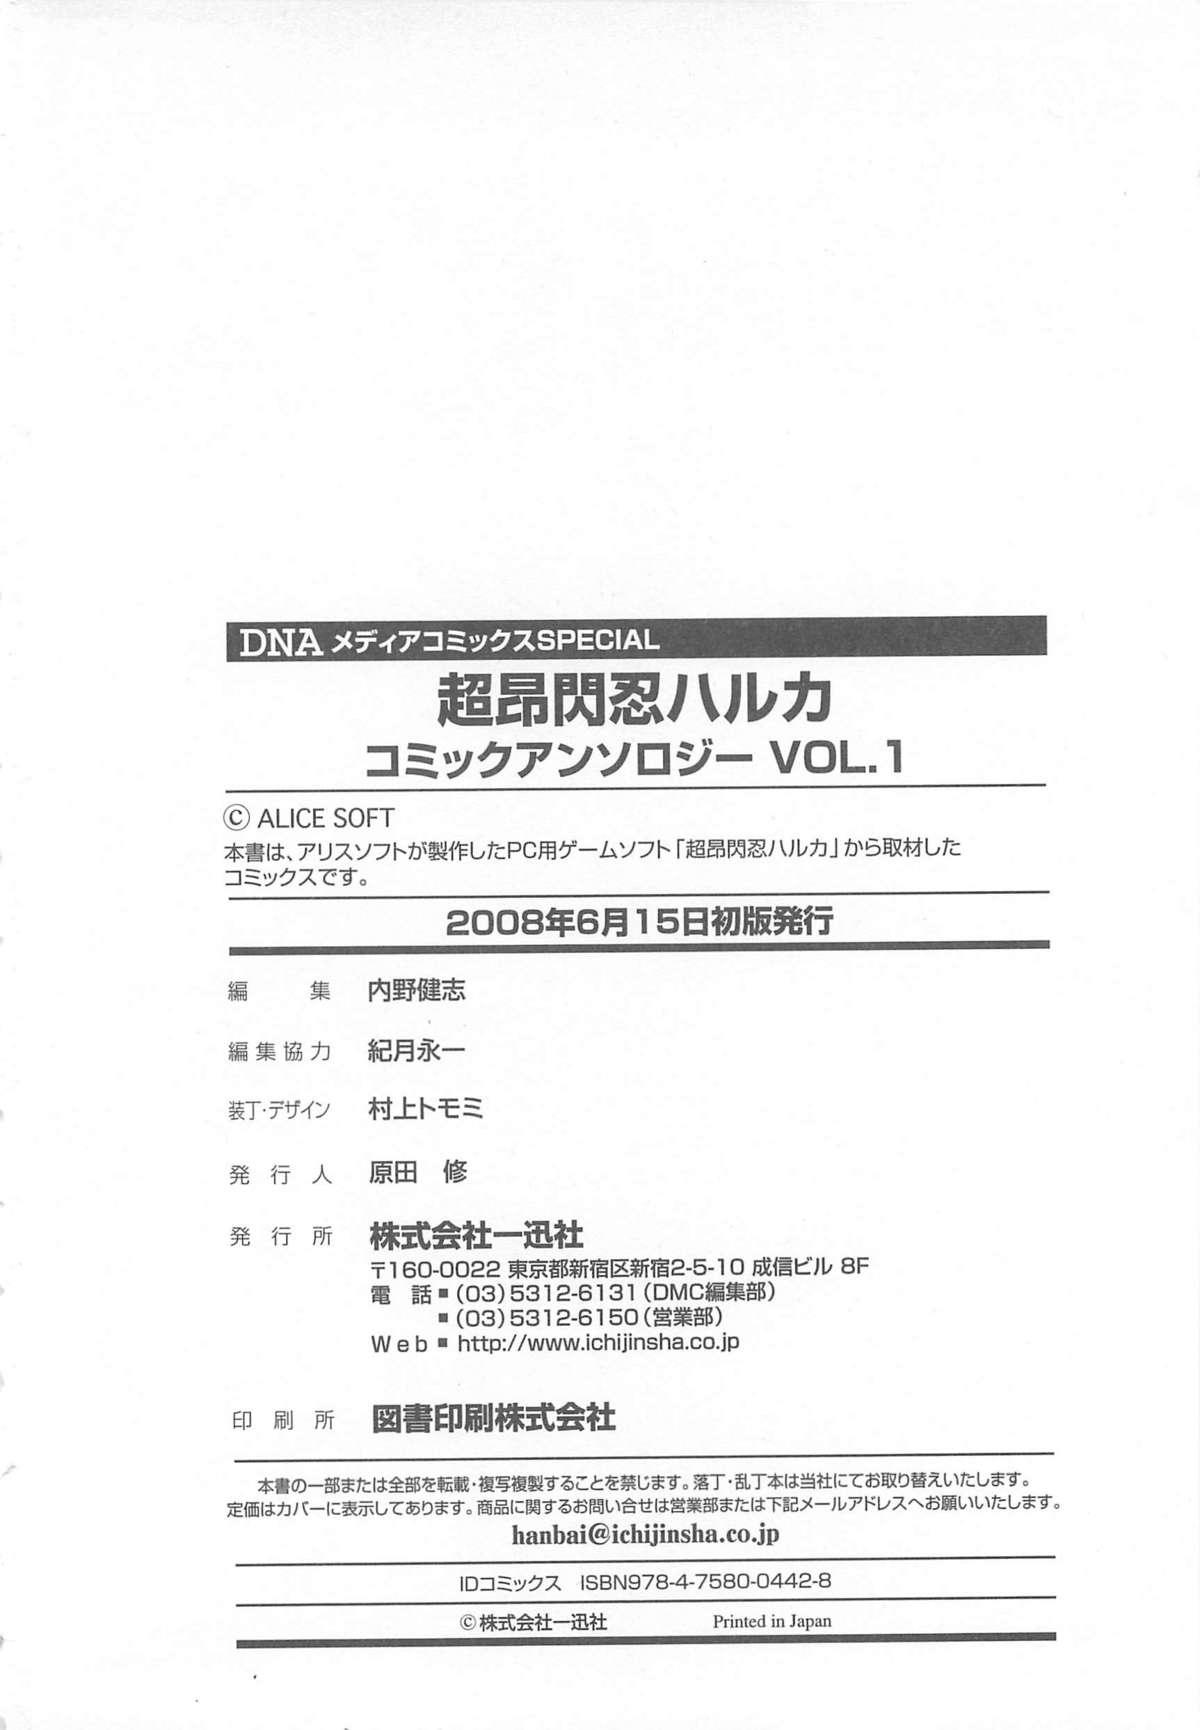 Choukou Sennin Haruka Comic Anthology Vol.1 159